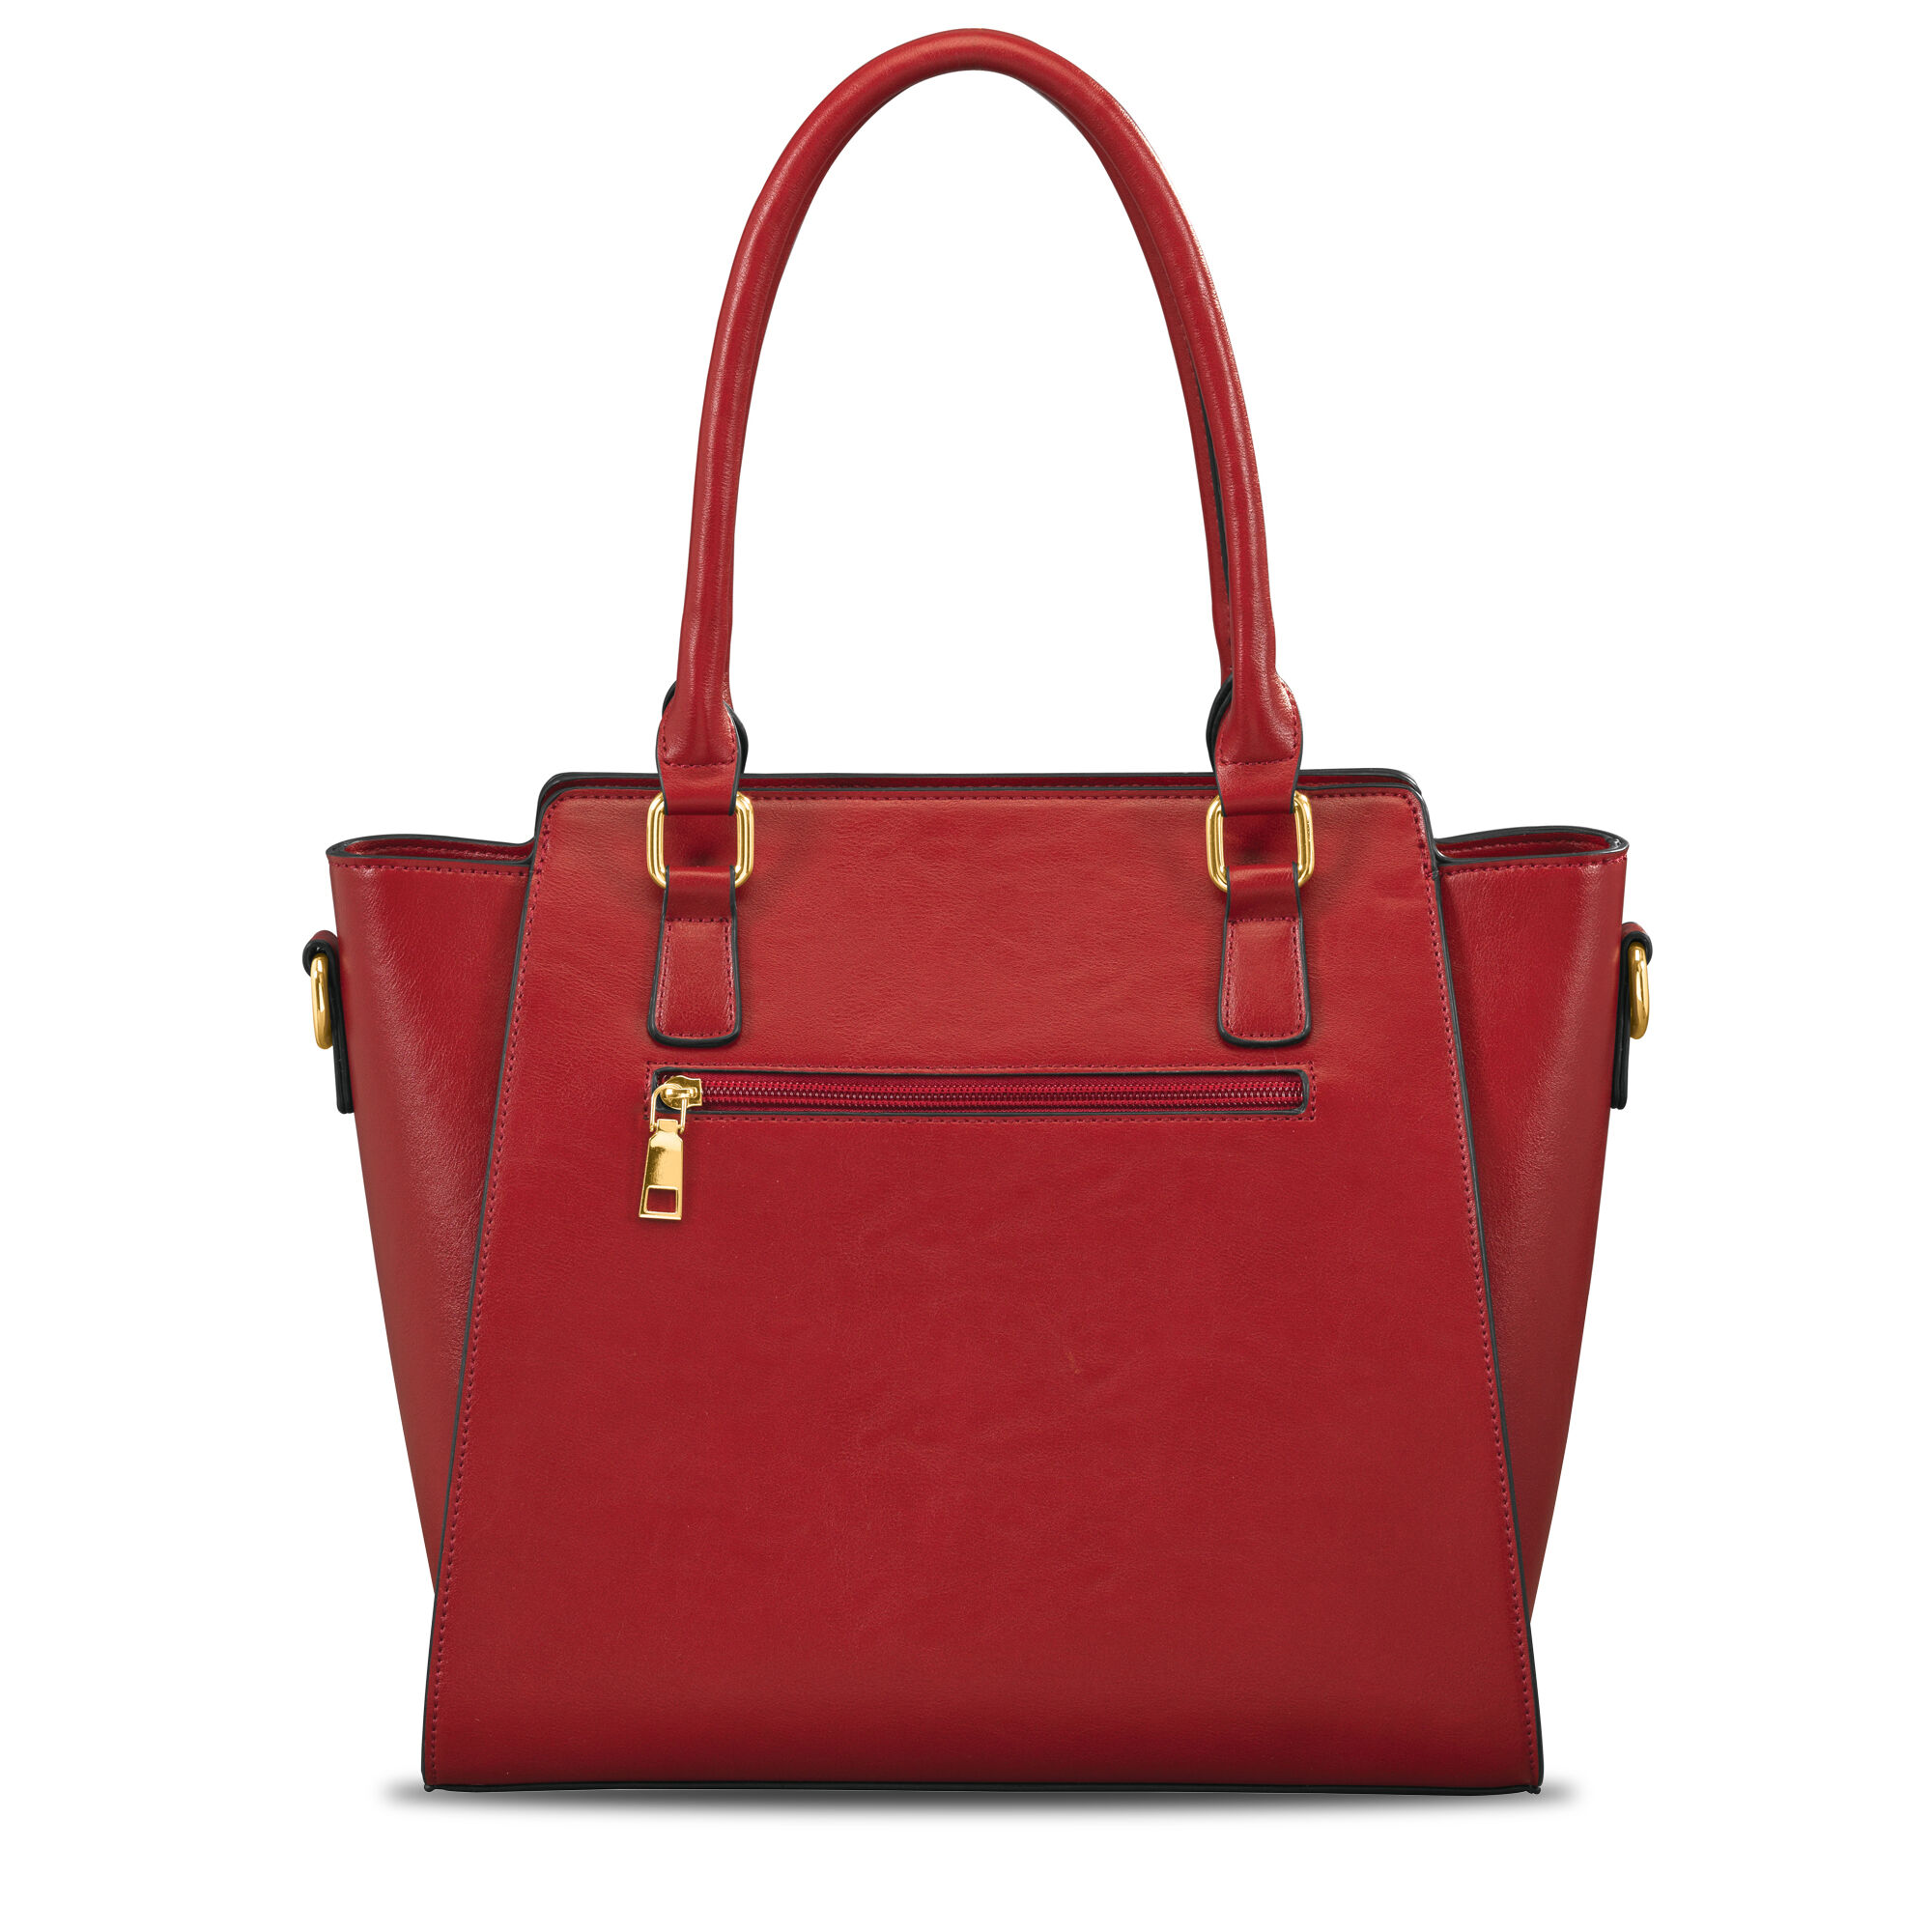 The Camilla 3 in 1 Handbag Set 10052 0014 d handbag